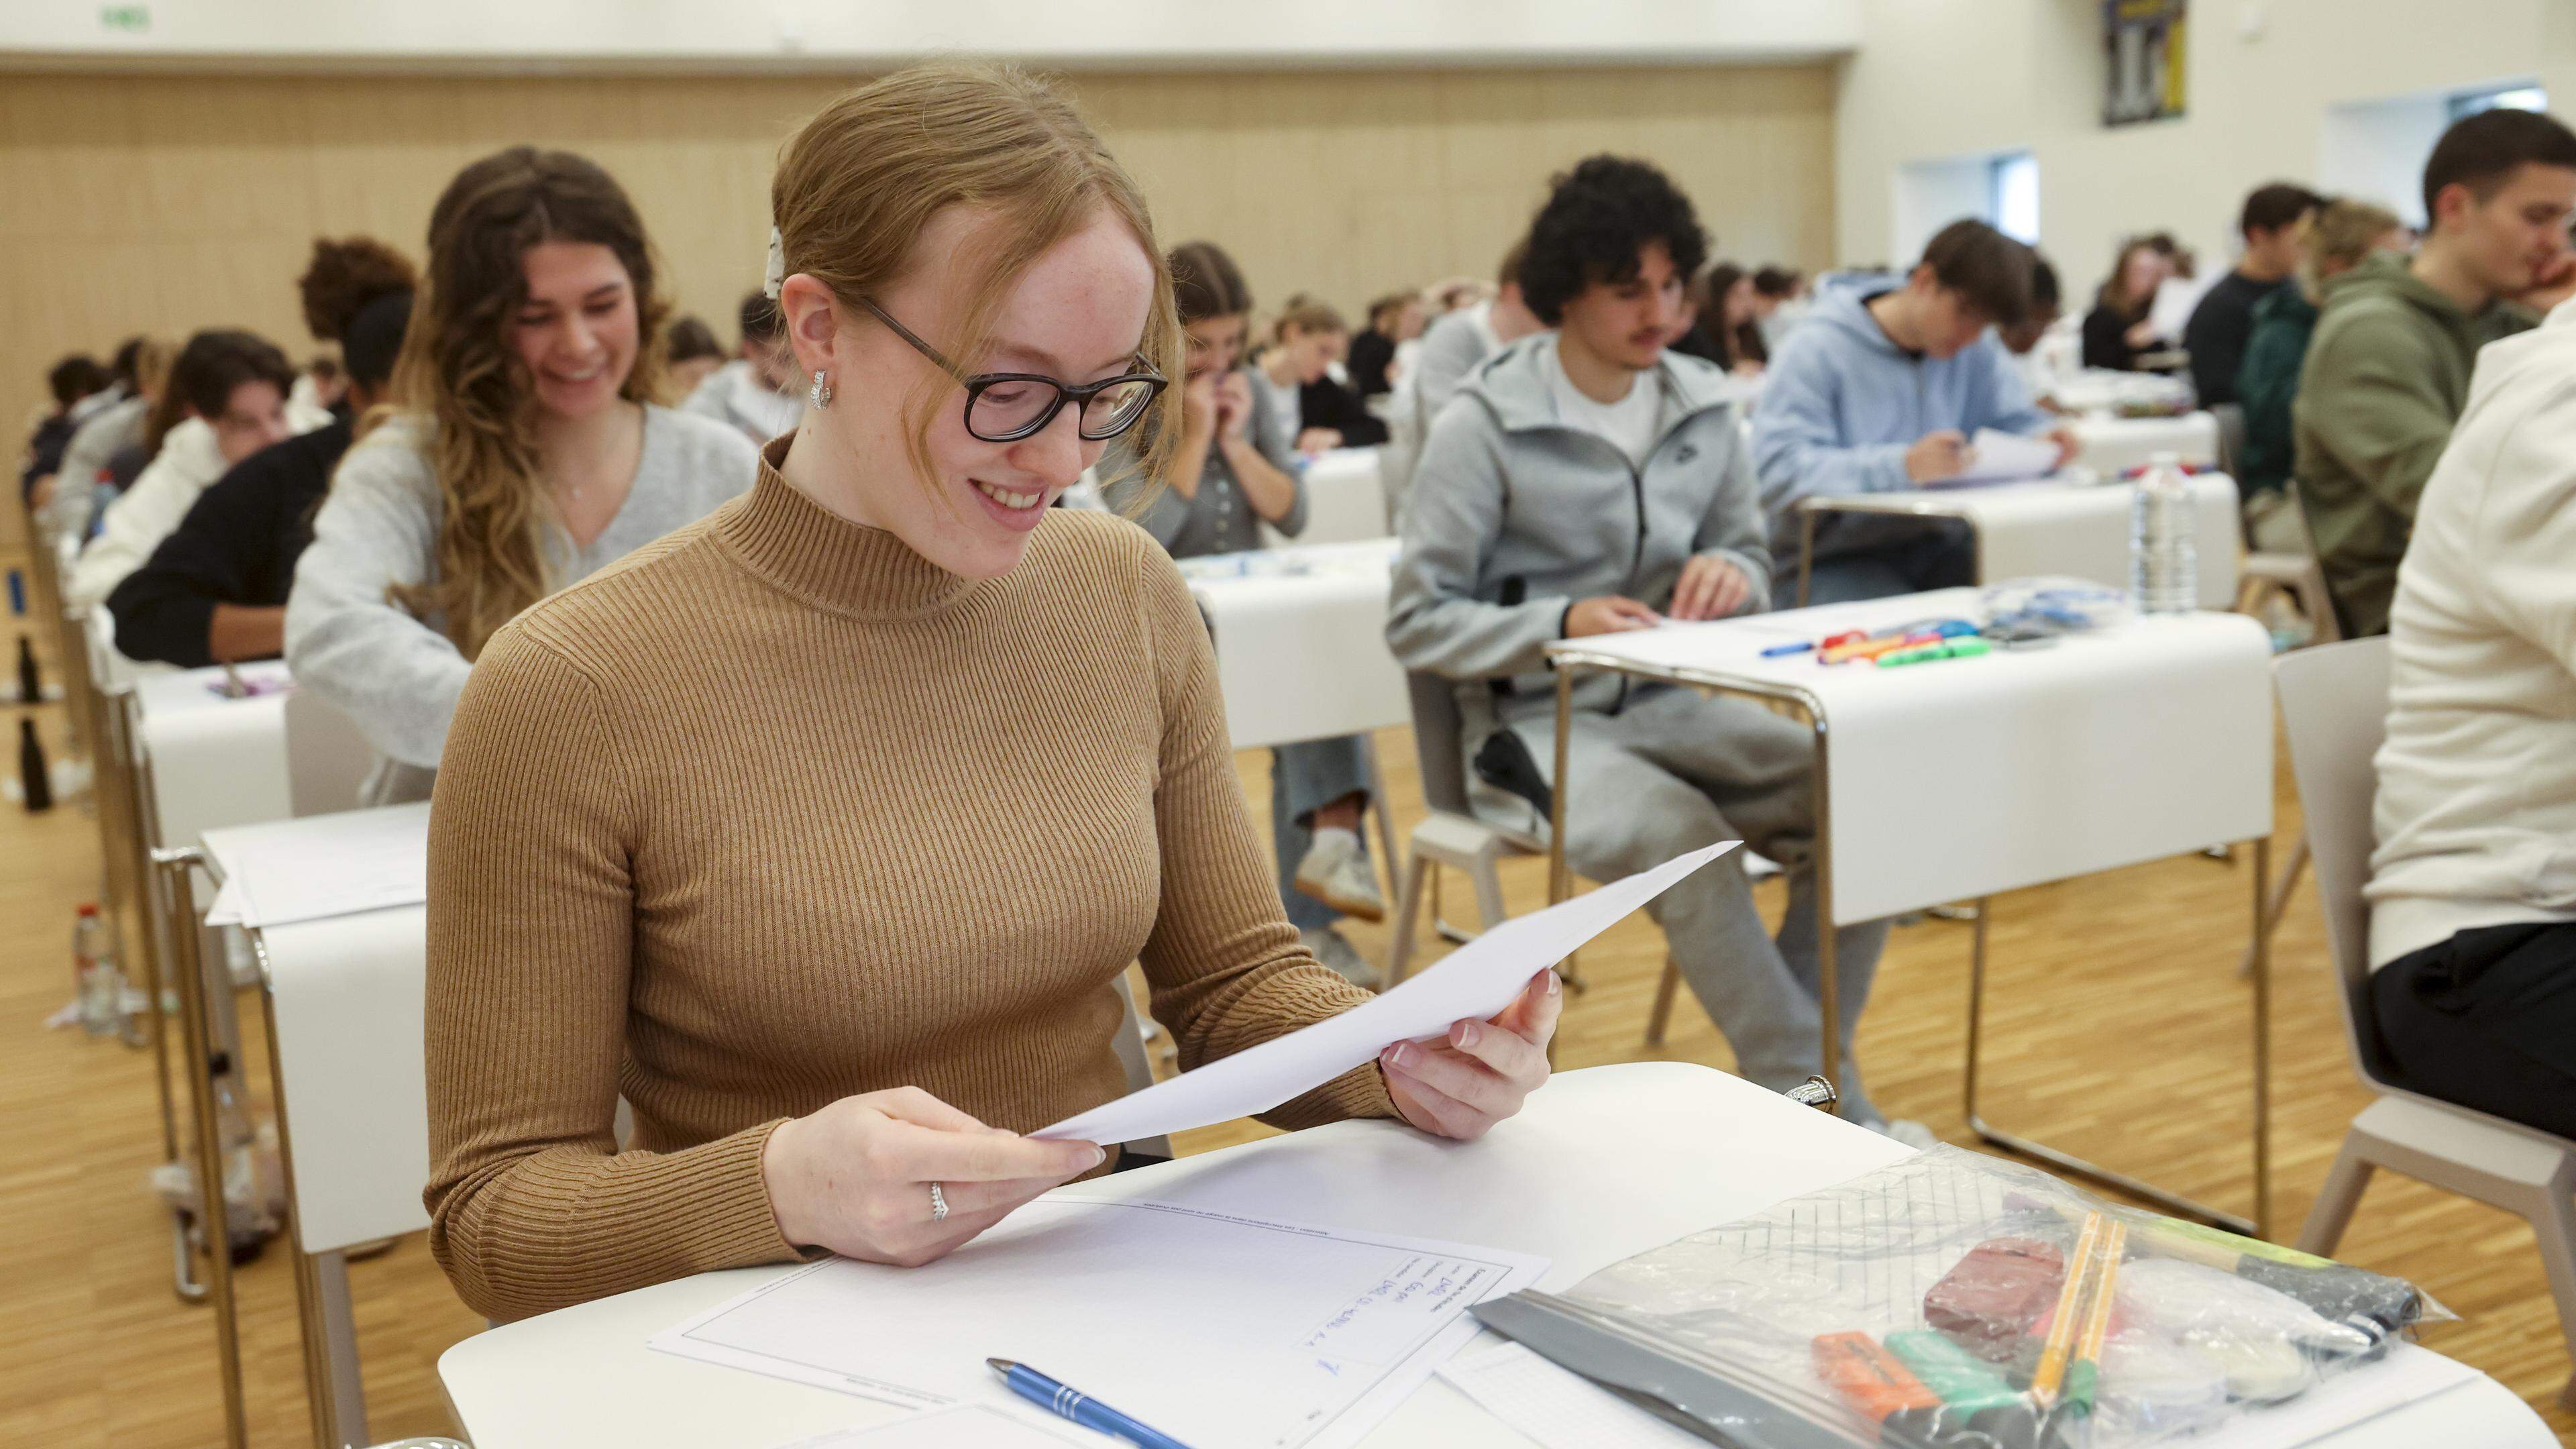 Le coup d’envoi des examens de fin d’année dans l’enseignement secondaire classique et général au Luxembourg a été donné.